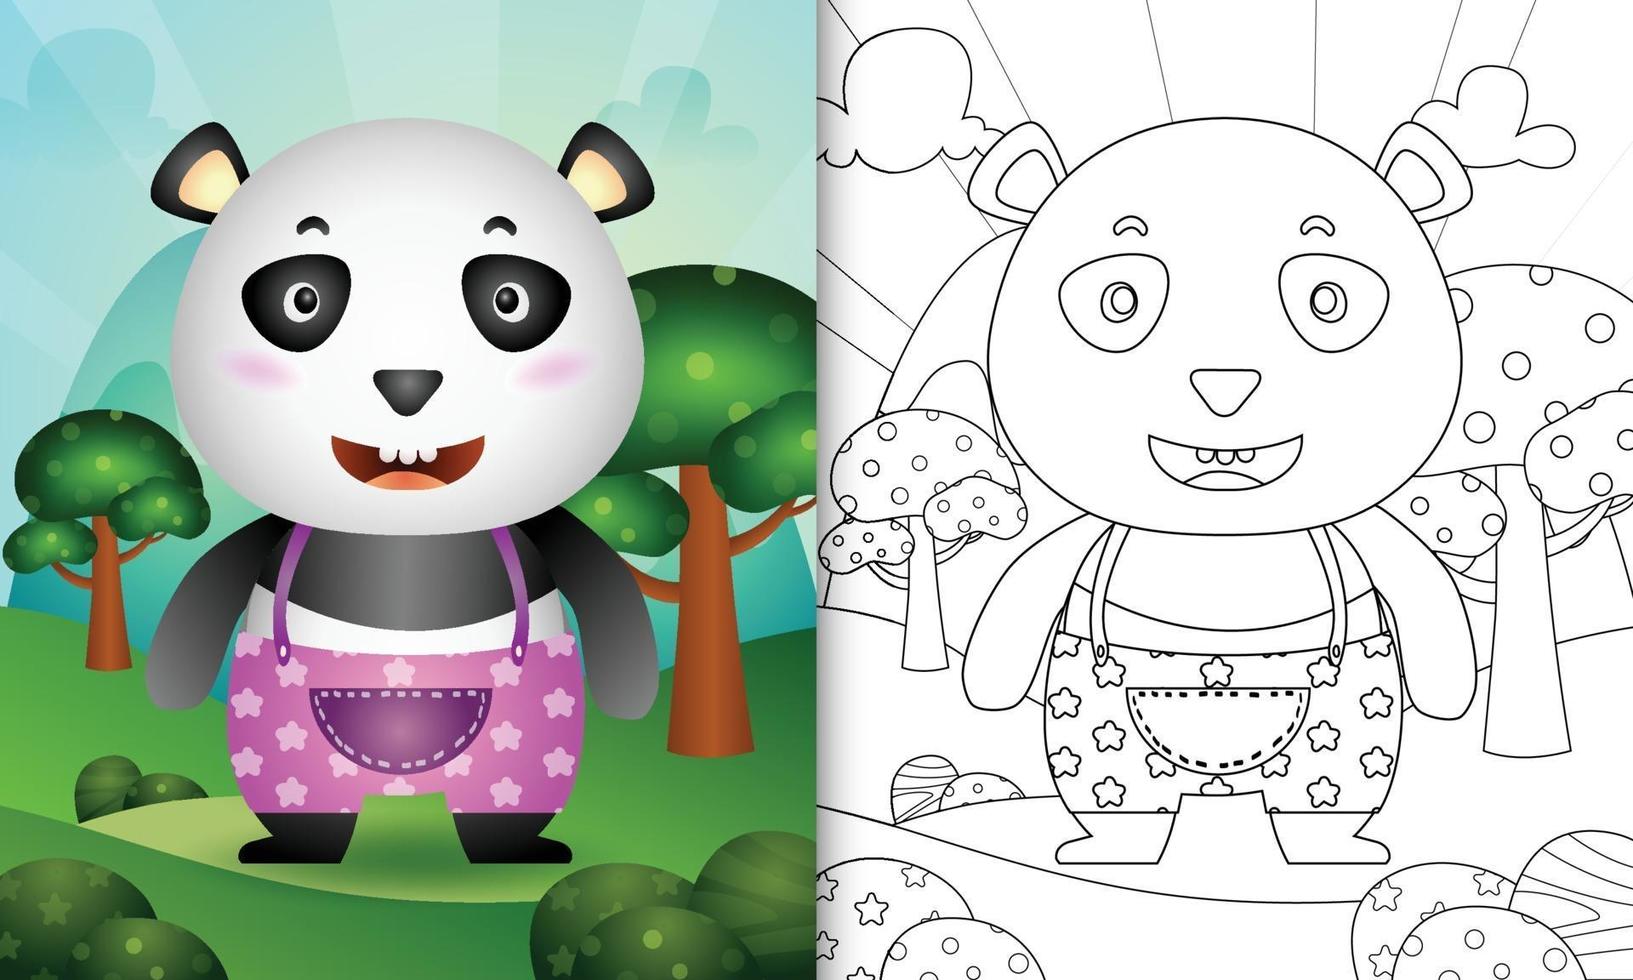 modelo de livro para colorir para crianças com uma ilustração do personagem panda fofo vetor